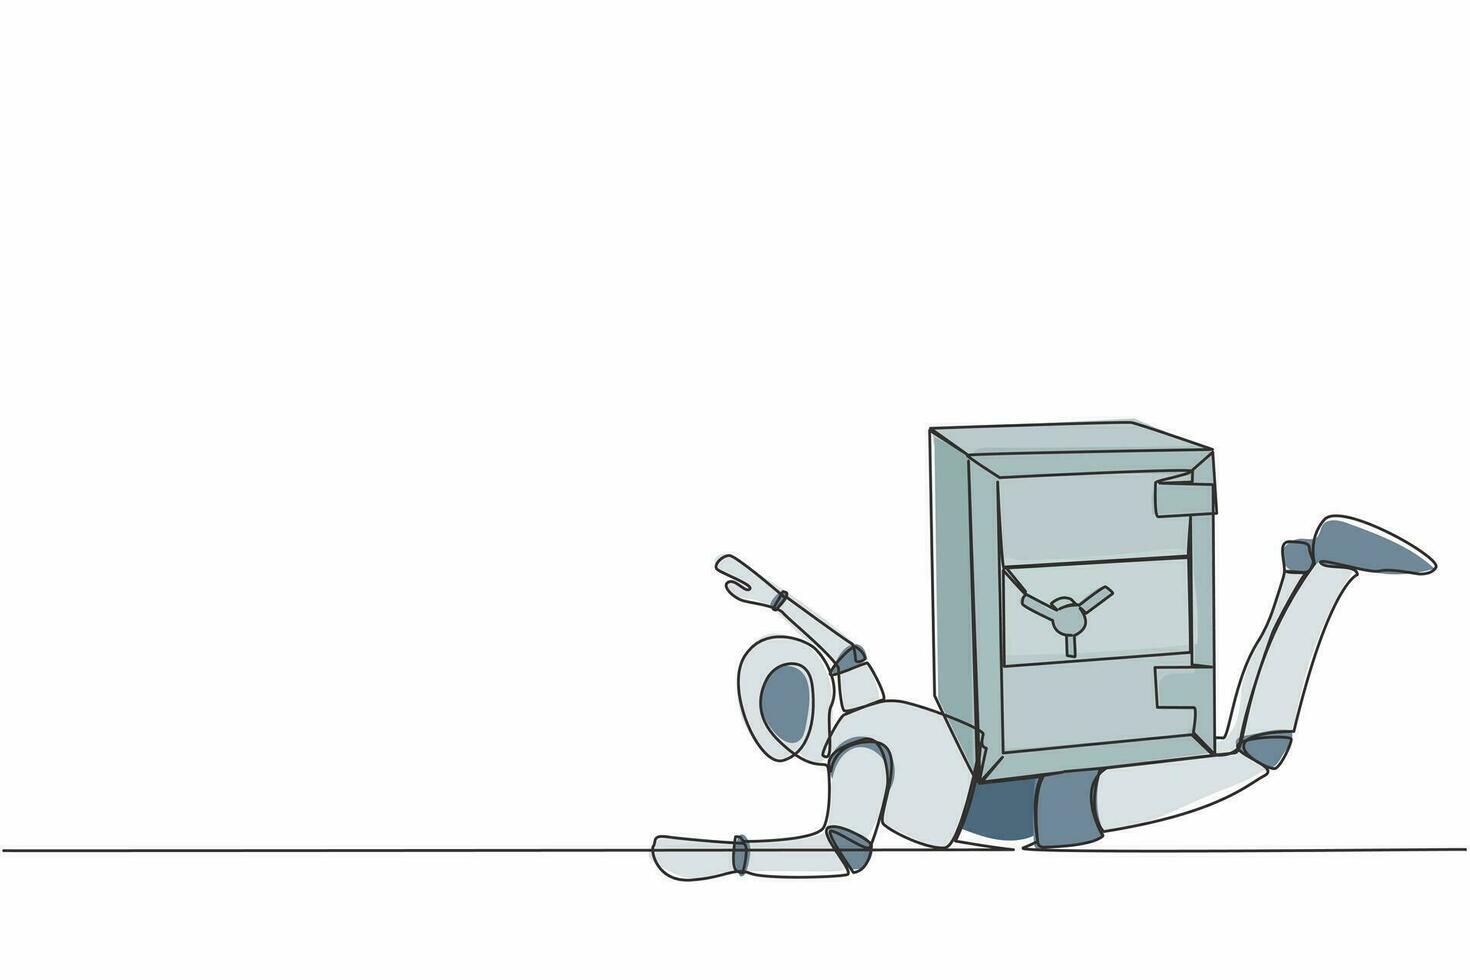 enda ett linje teckning betonade robot under tung säker deposition låda börda. påverkan i pandemi kris, konkurs på tech industri. robot artificiell intelligens. kontinuerlig linje dra design vektor